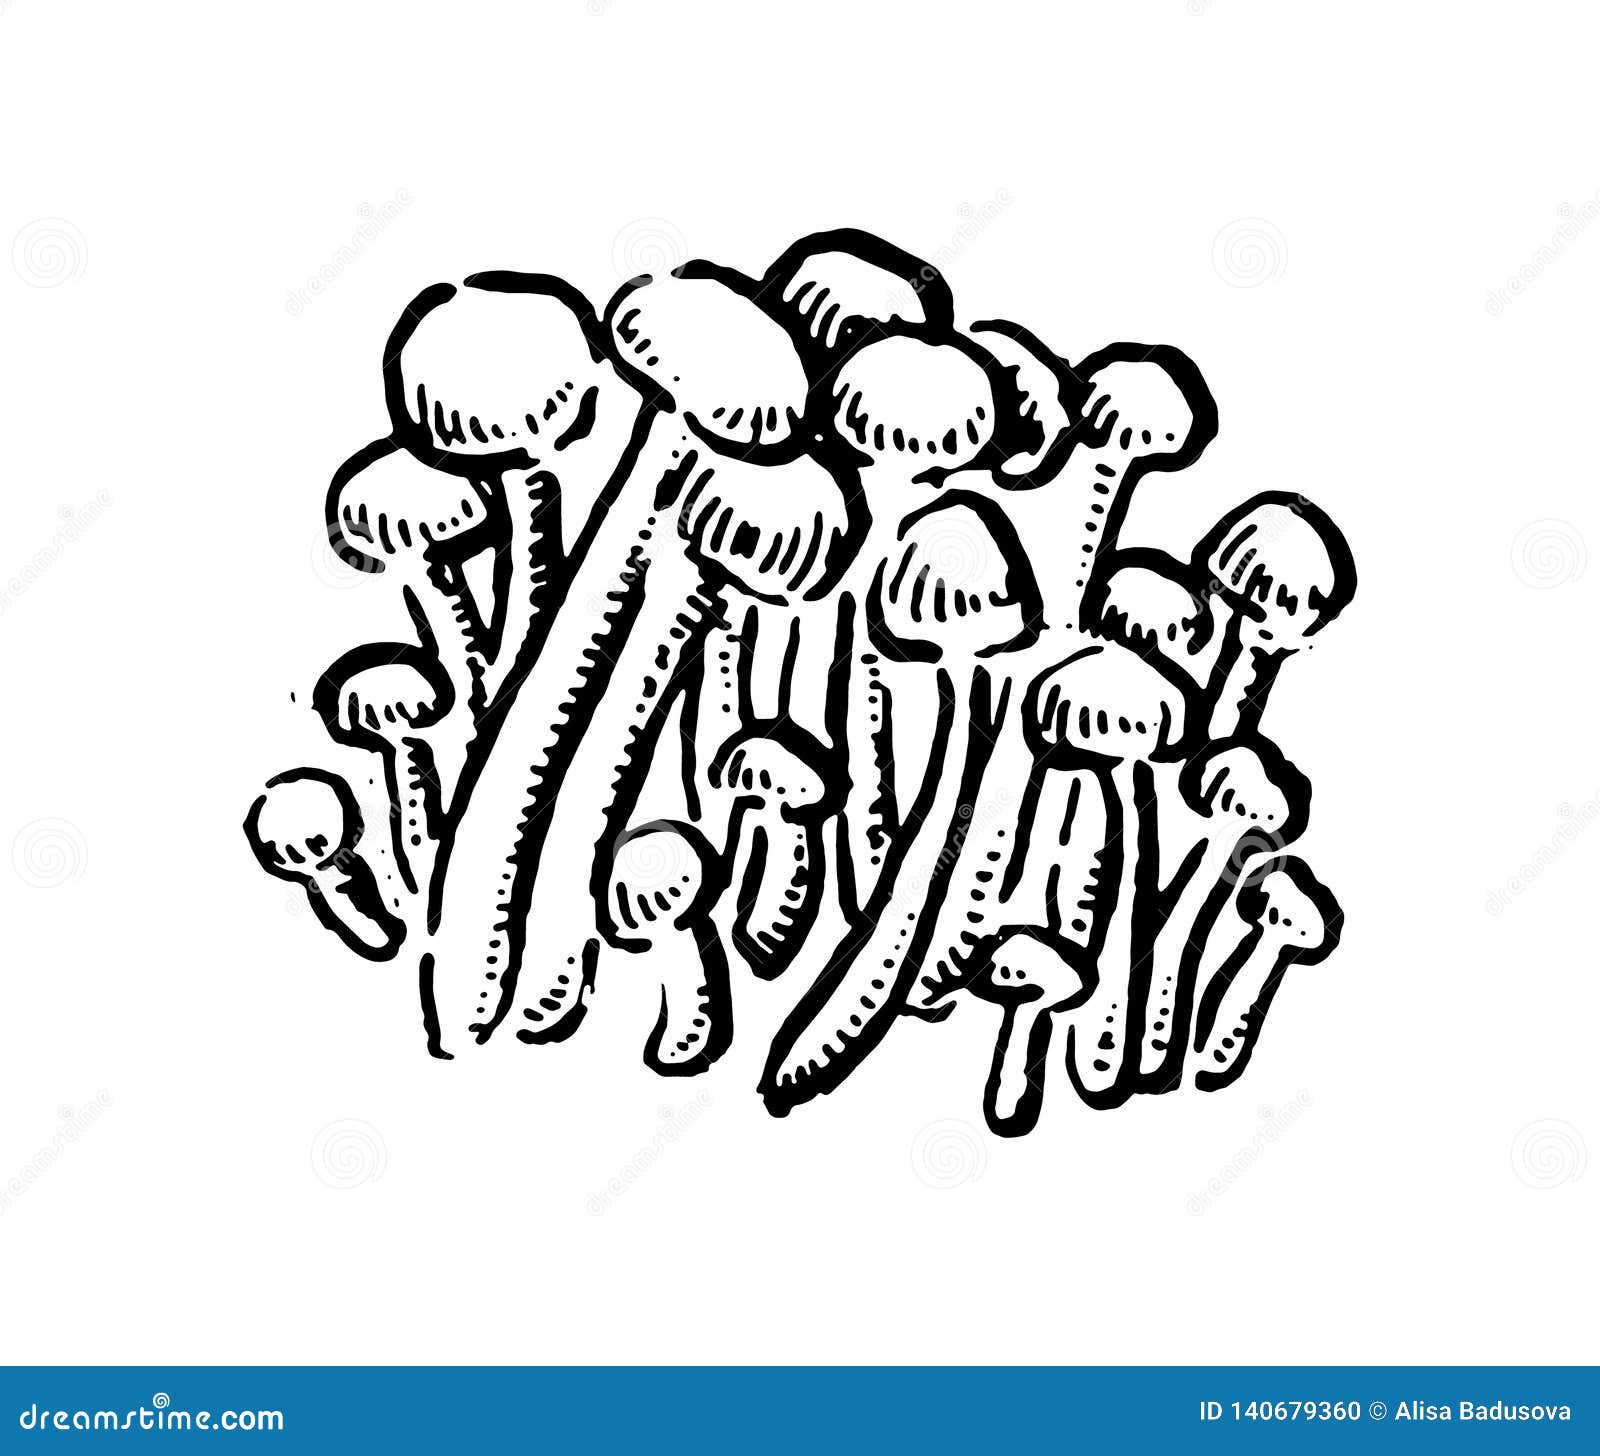 Enoki Mushrooms. Hand Drawn Vintage Vector Illustration on White ...